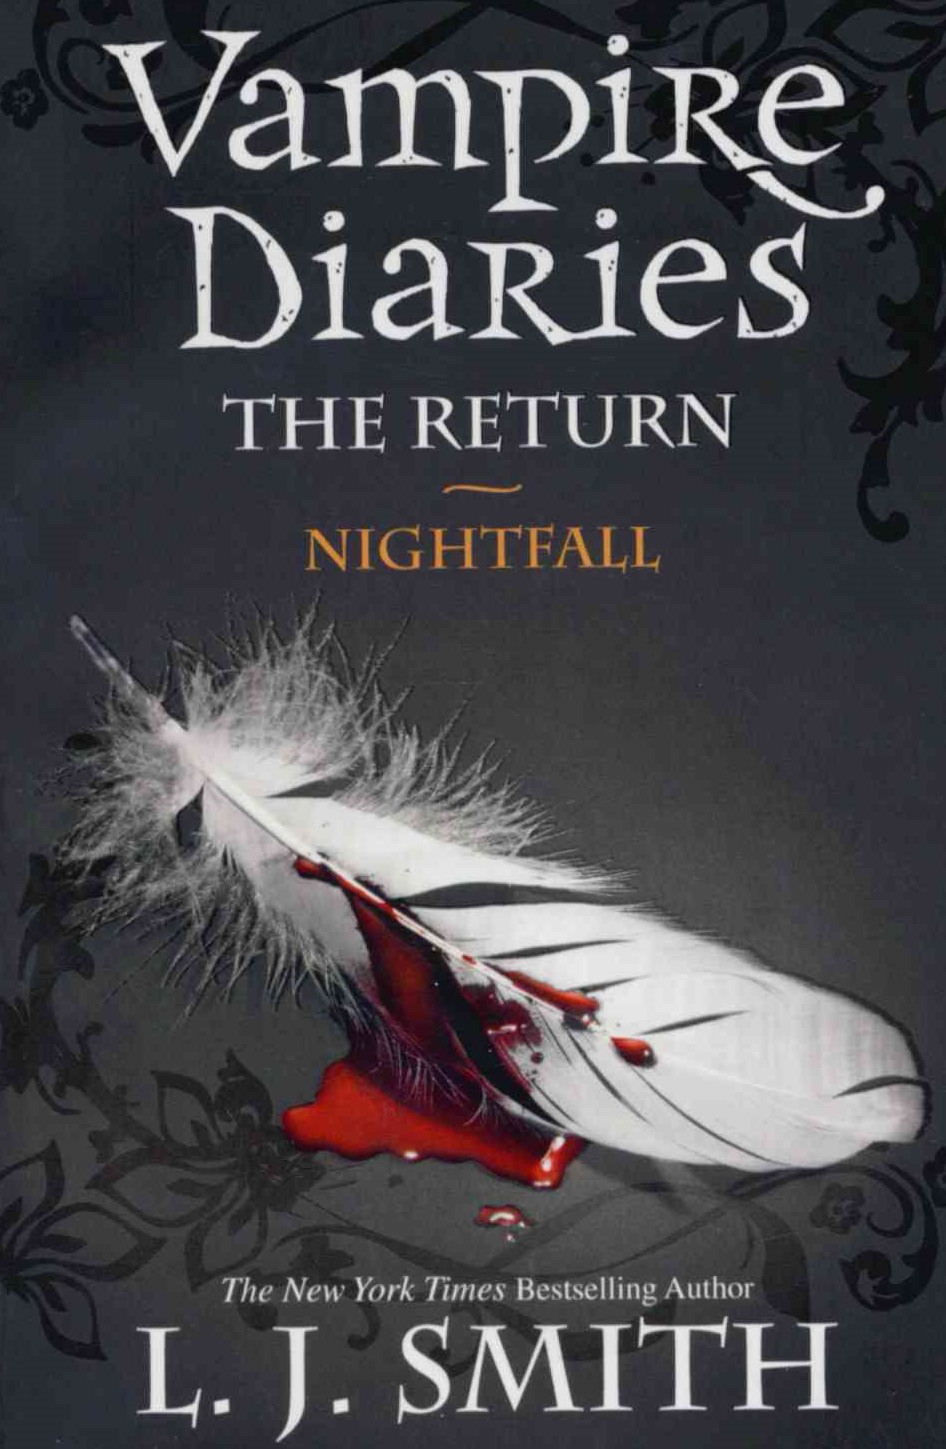 The Vampire Diaries: The Return. Nightfall